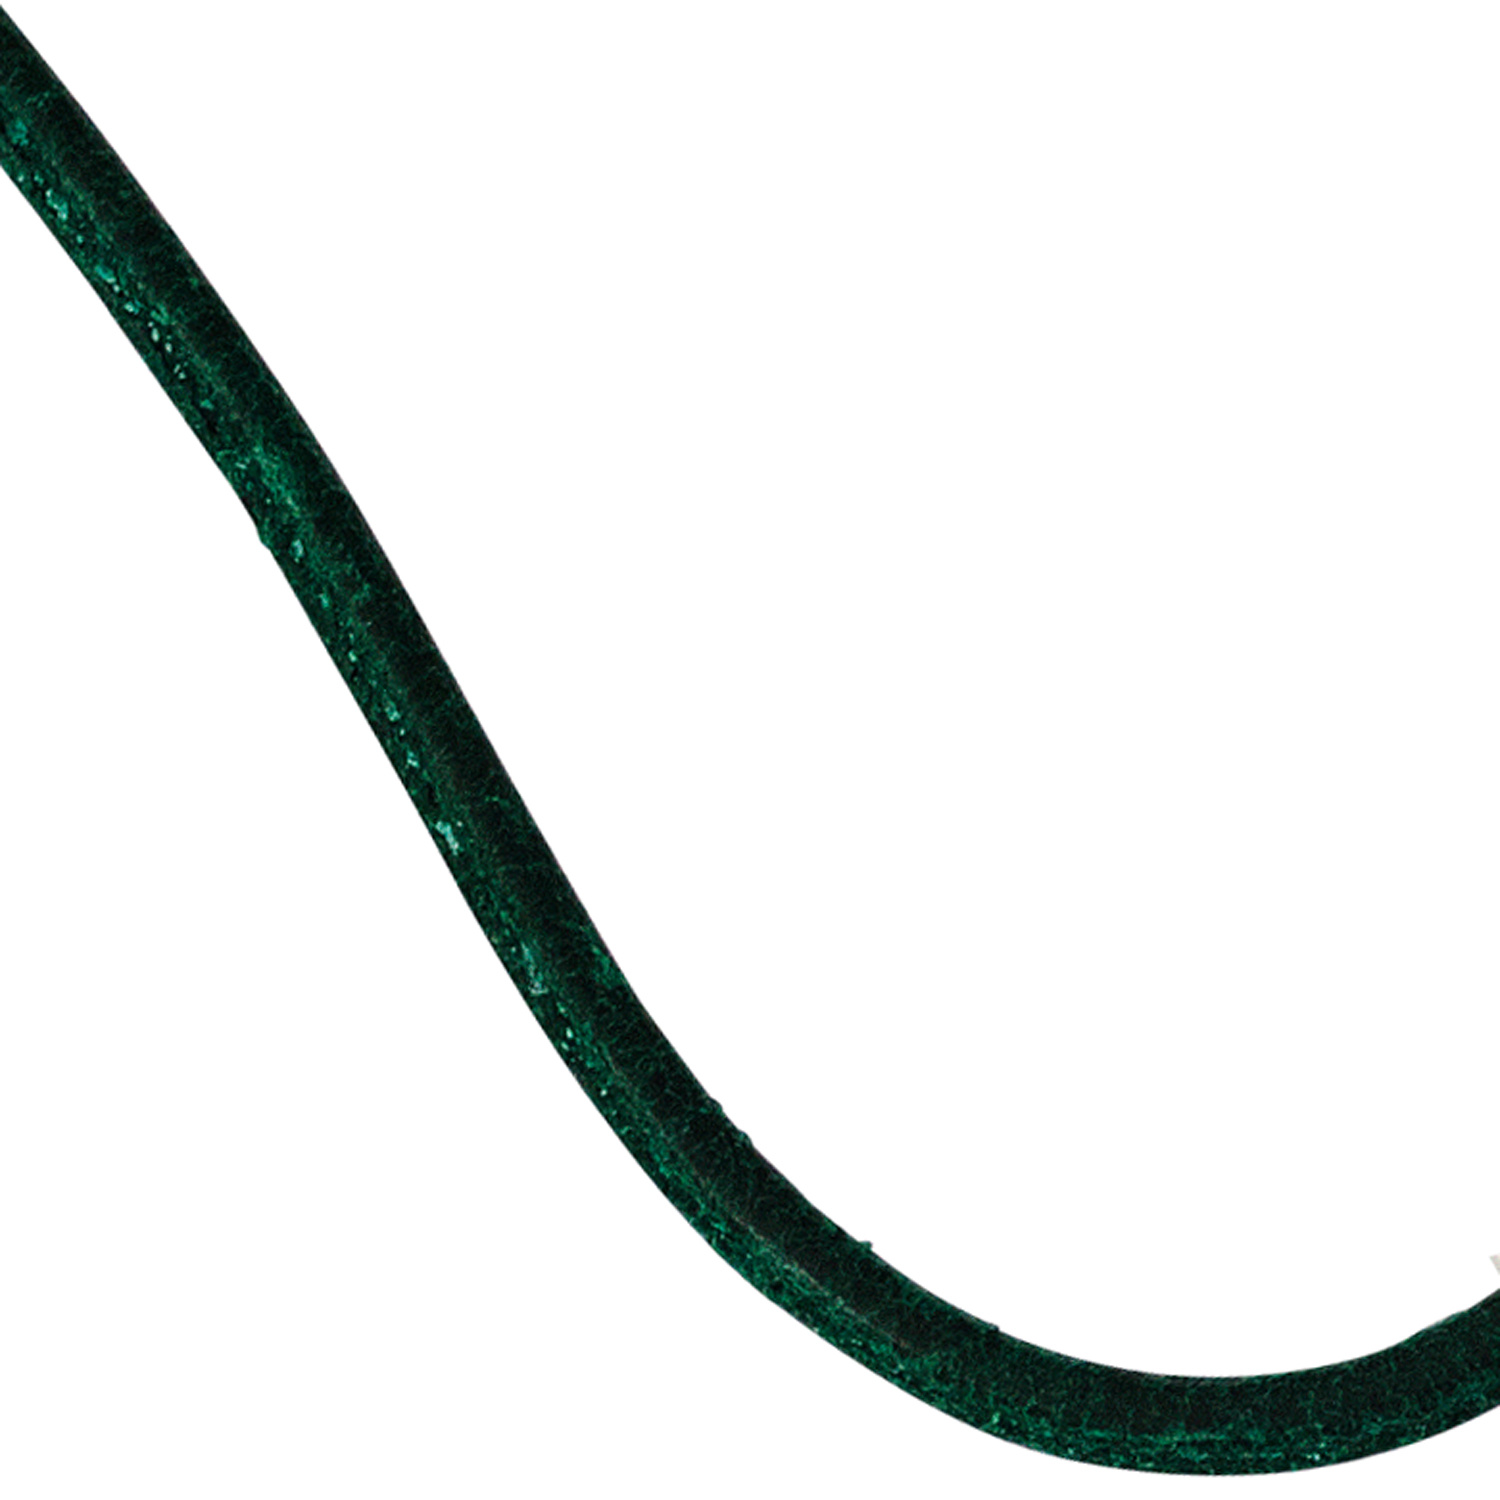 Lederschnur dunkelgrün ca. 1 m lang Halskette Kette Leder